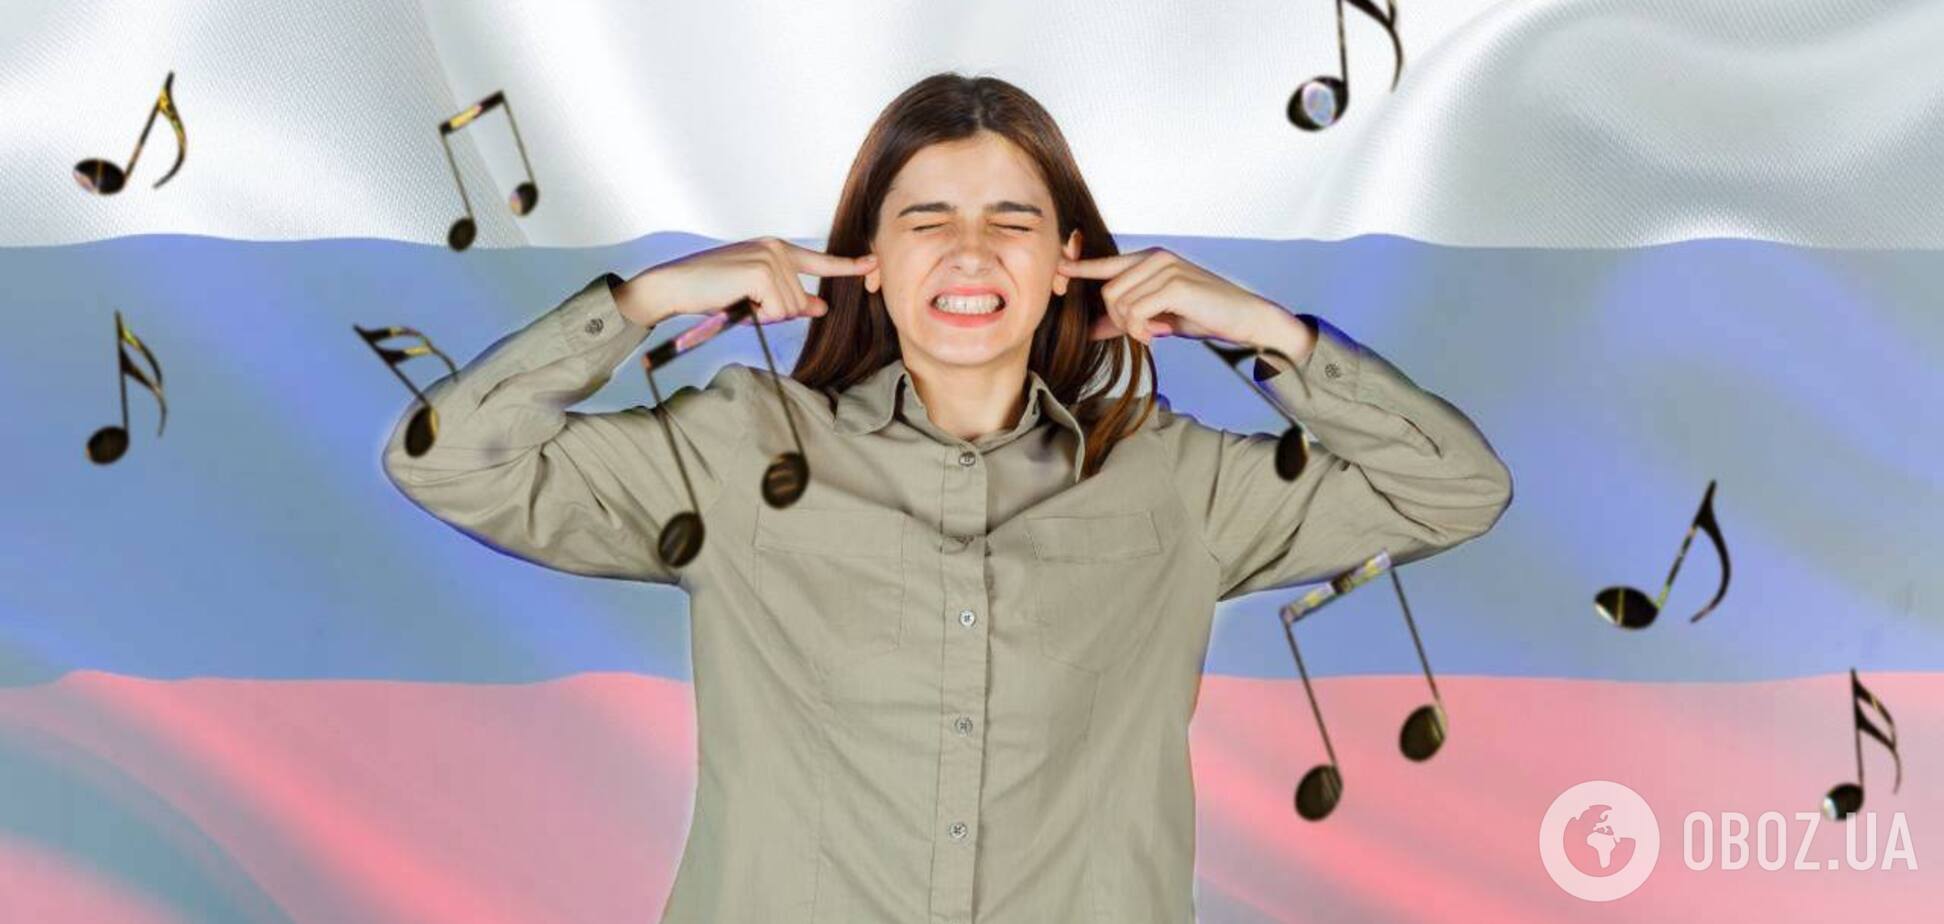 Российскую музыку хотят полностью запретить в украинском YouTube и мобильных приложениях. Первые детали